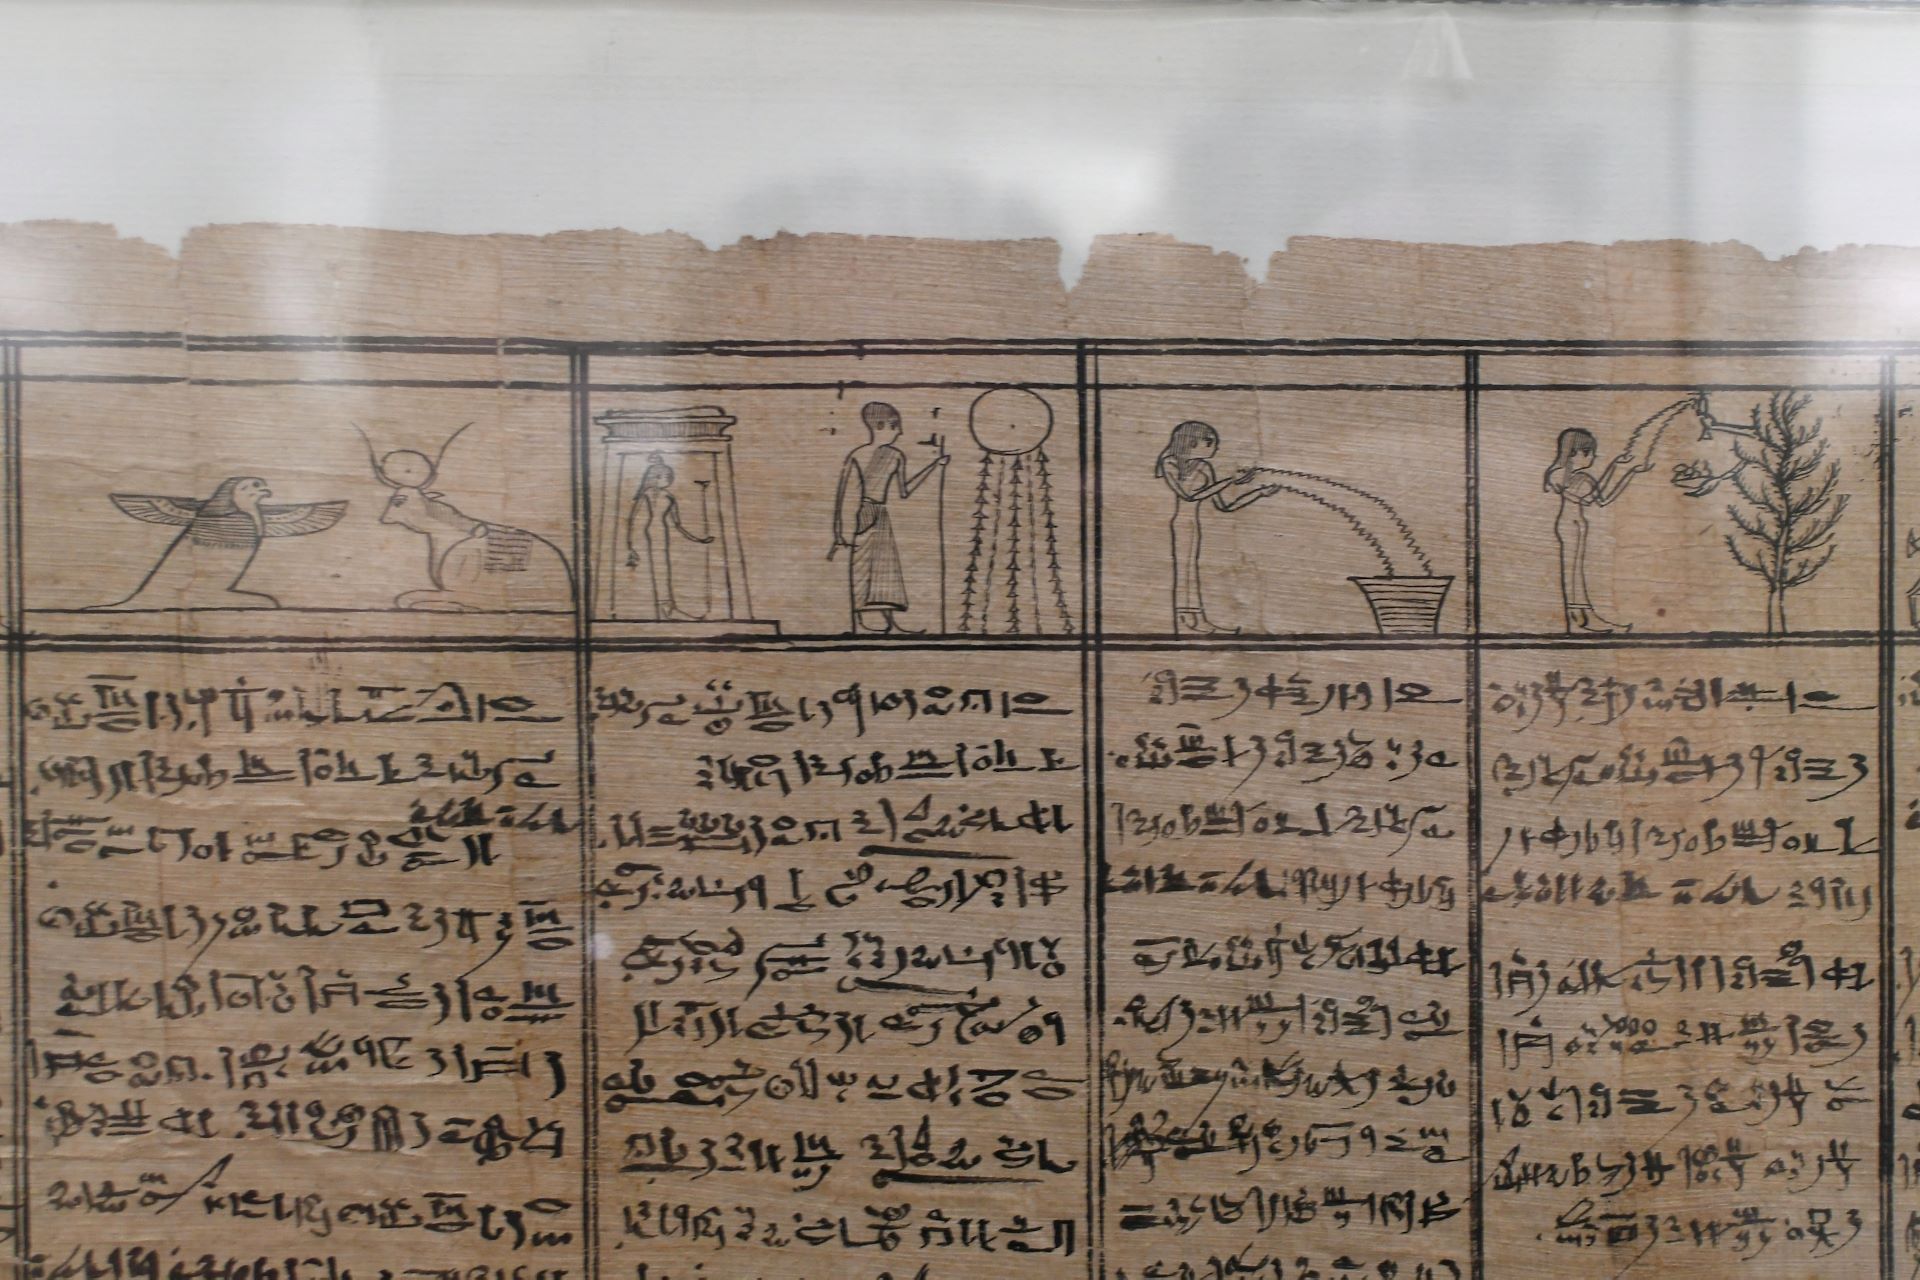 blog:2018-11-17-texte-aus-ferner-zeit:2018-11-17-wien-papyrusmuseum-059b.jpg